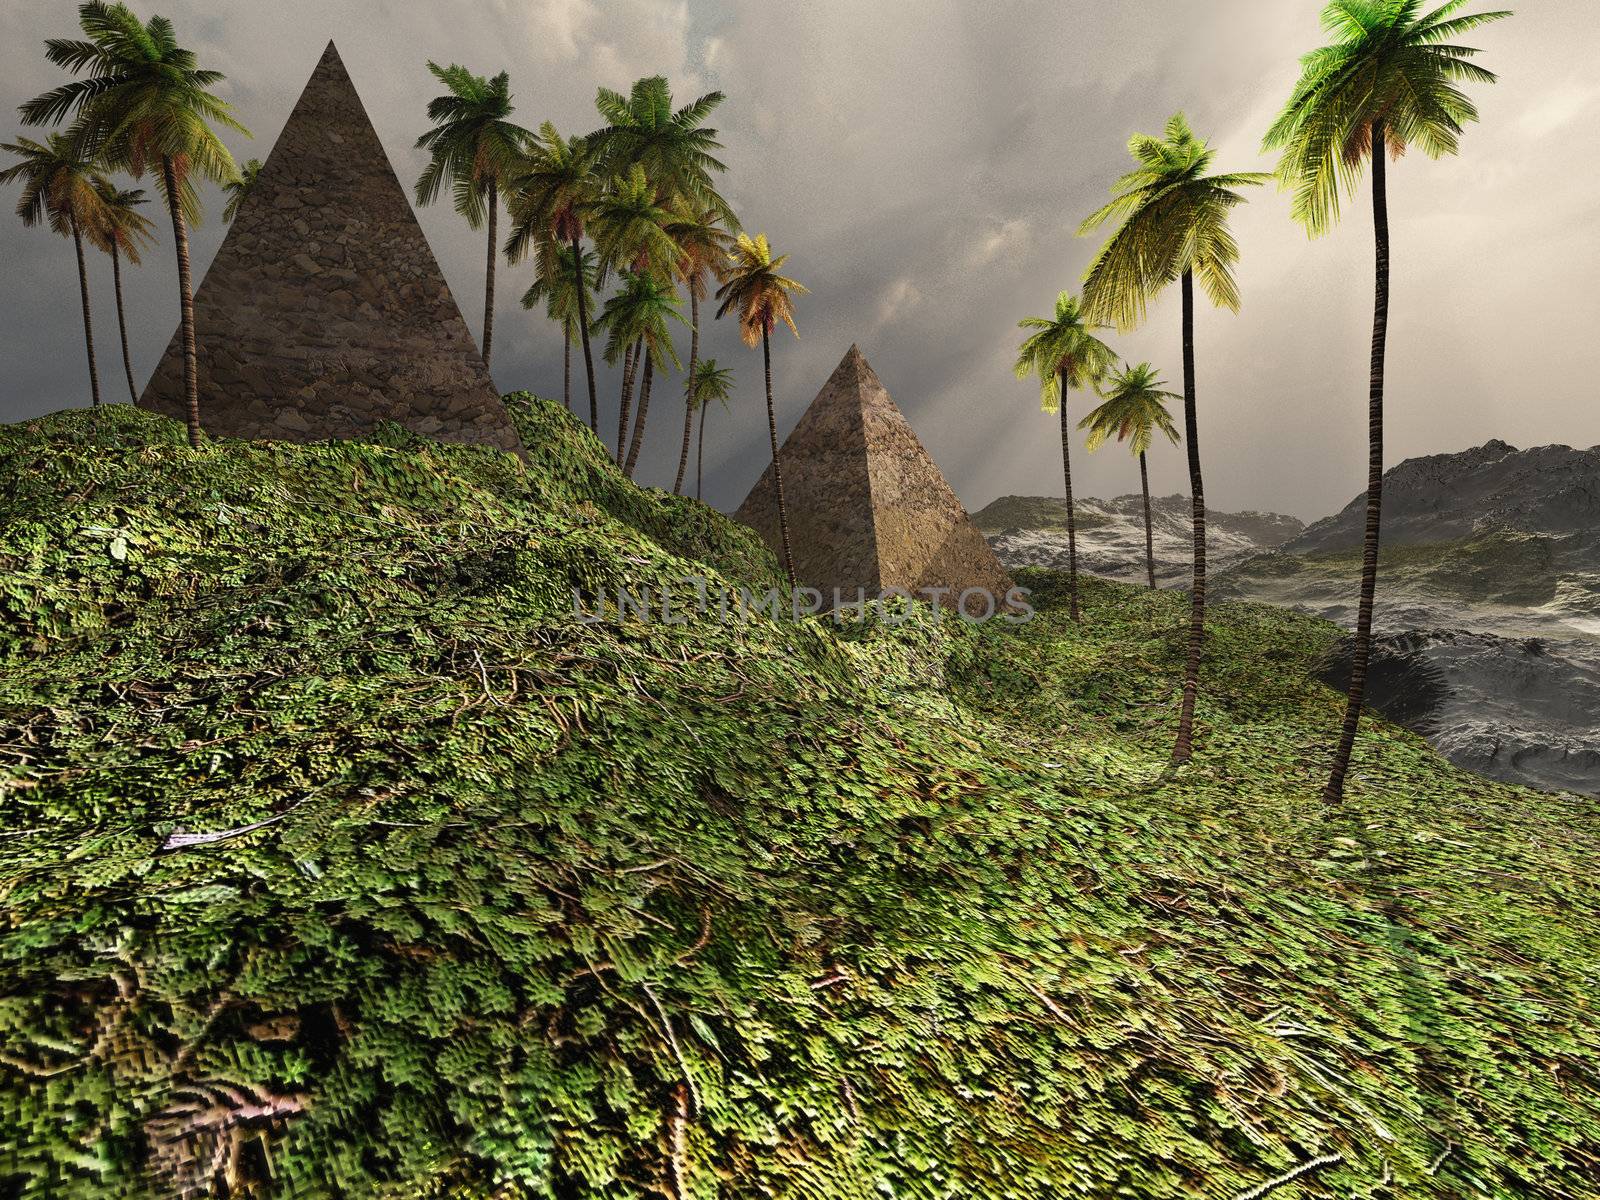 Two pyramids sit majestically among the surrounding jungle.